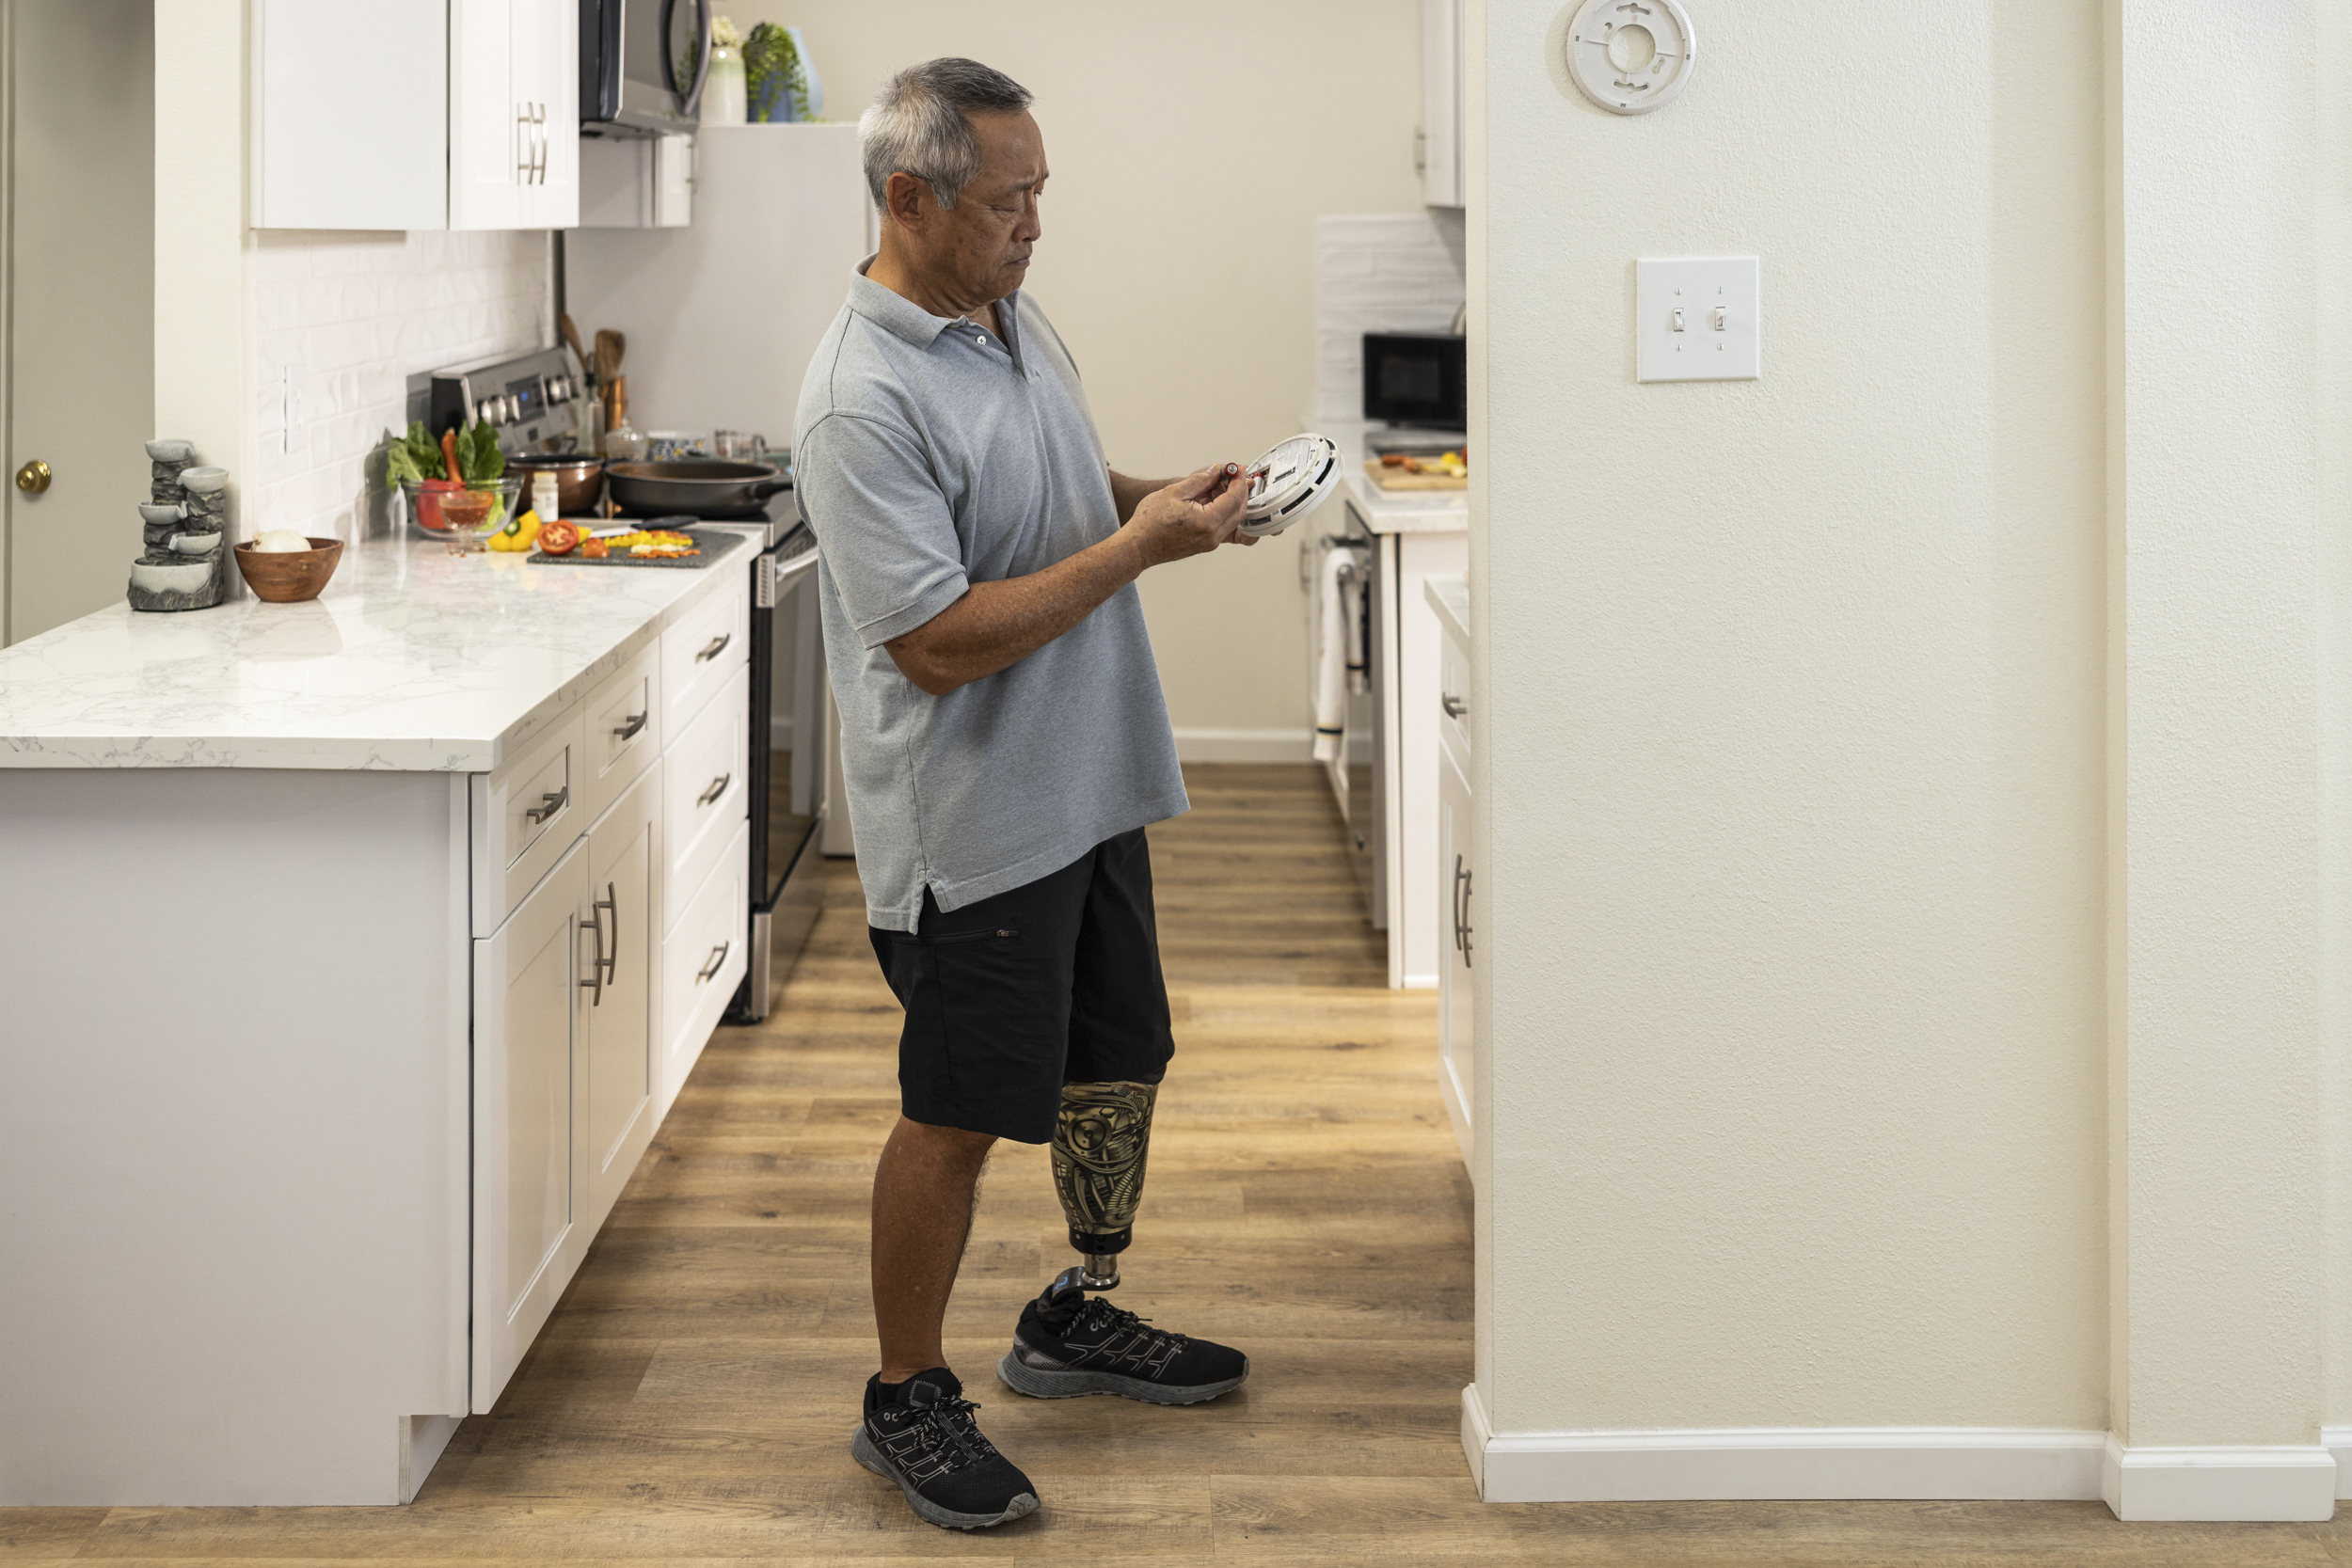 Seguridad contra incendios - Persona con una pierna prostética inspeccionando las baterías de su detector de humo.